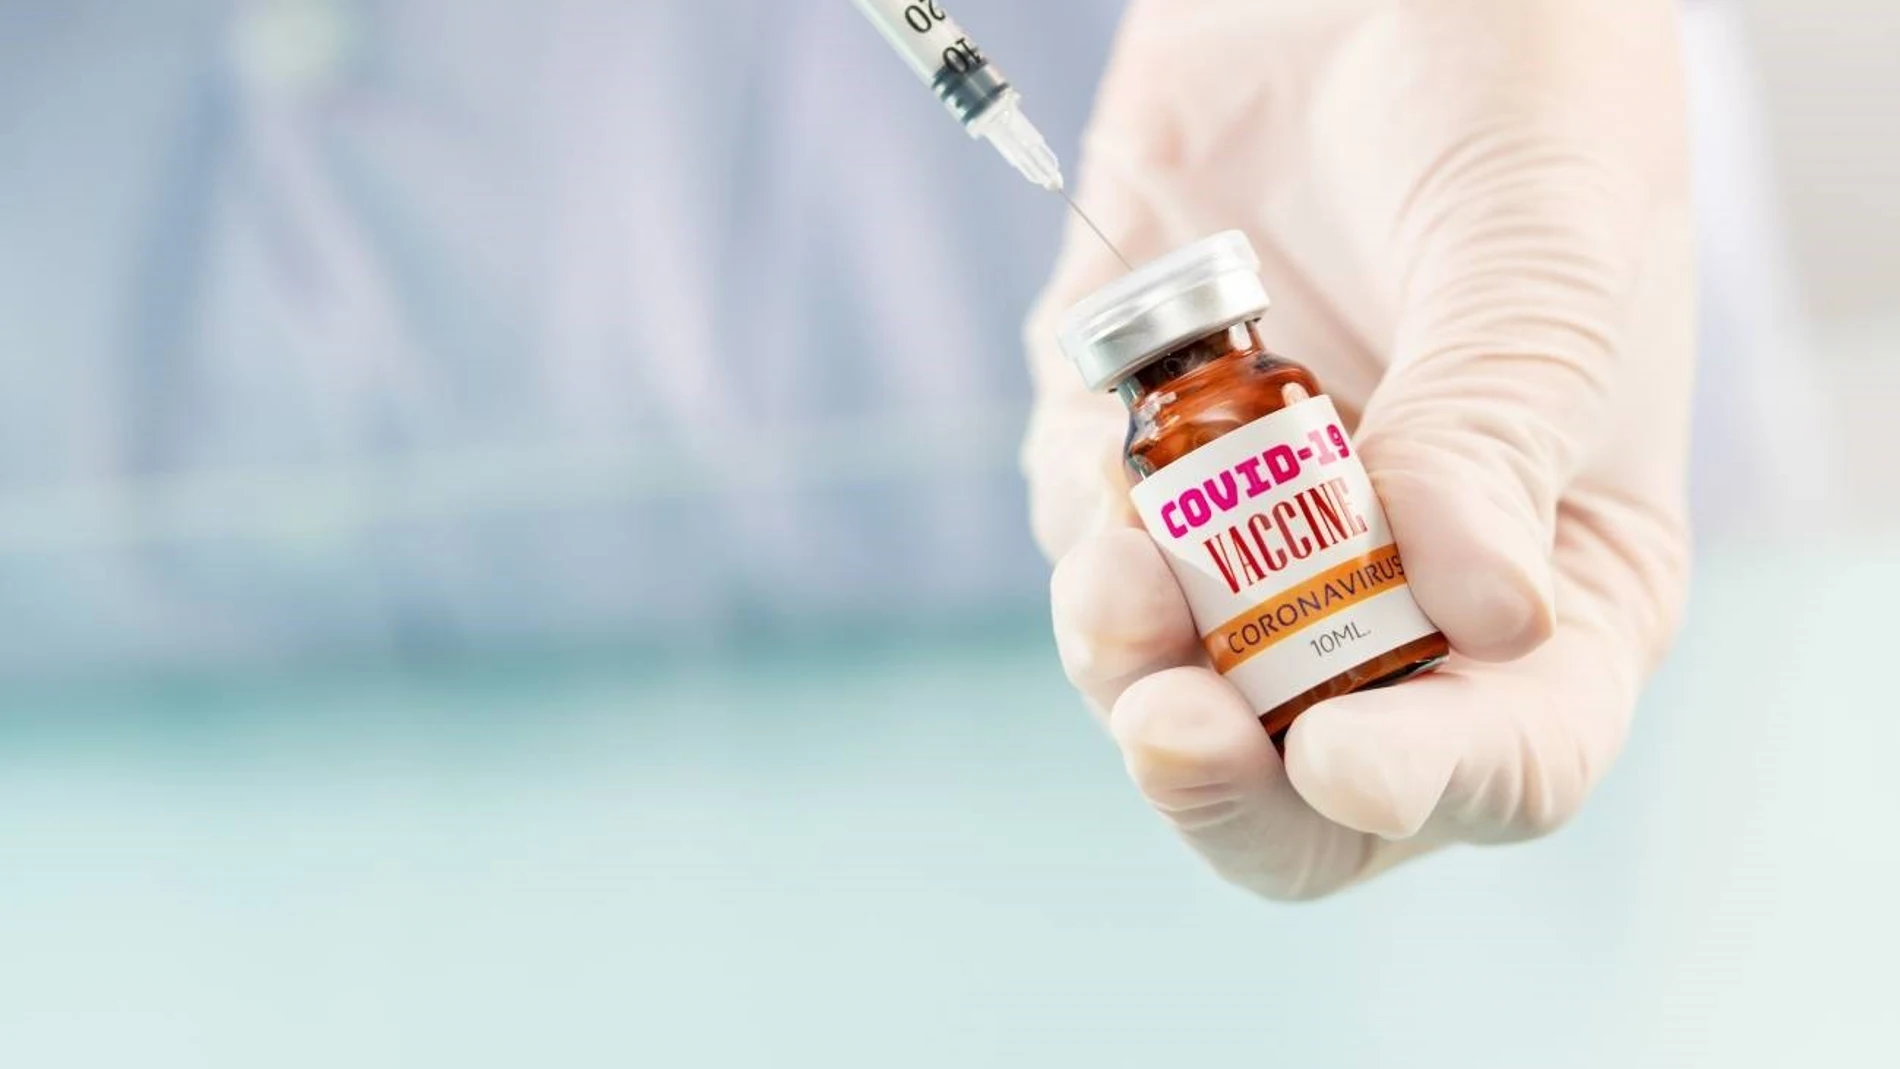 El laboratorio ha tomado el riesgo de empezar a producir ya la vacuna para que, si funciona, poder tenerla en el mercado inmediatamente